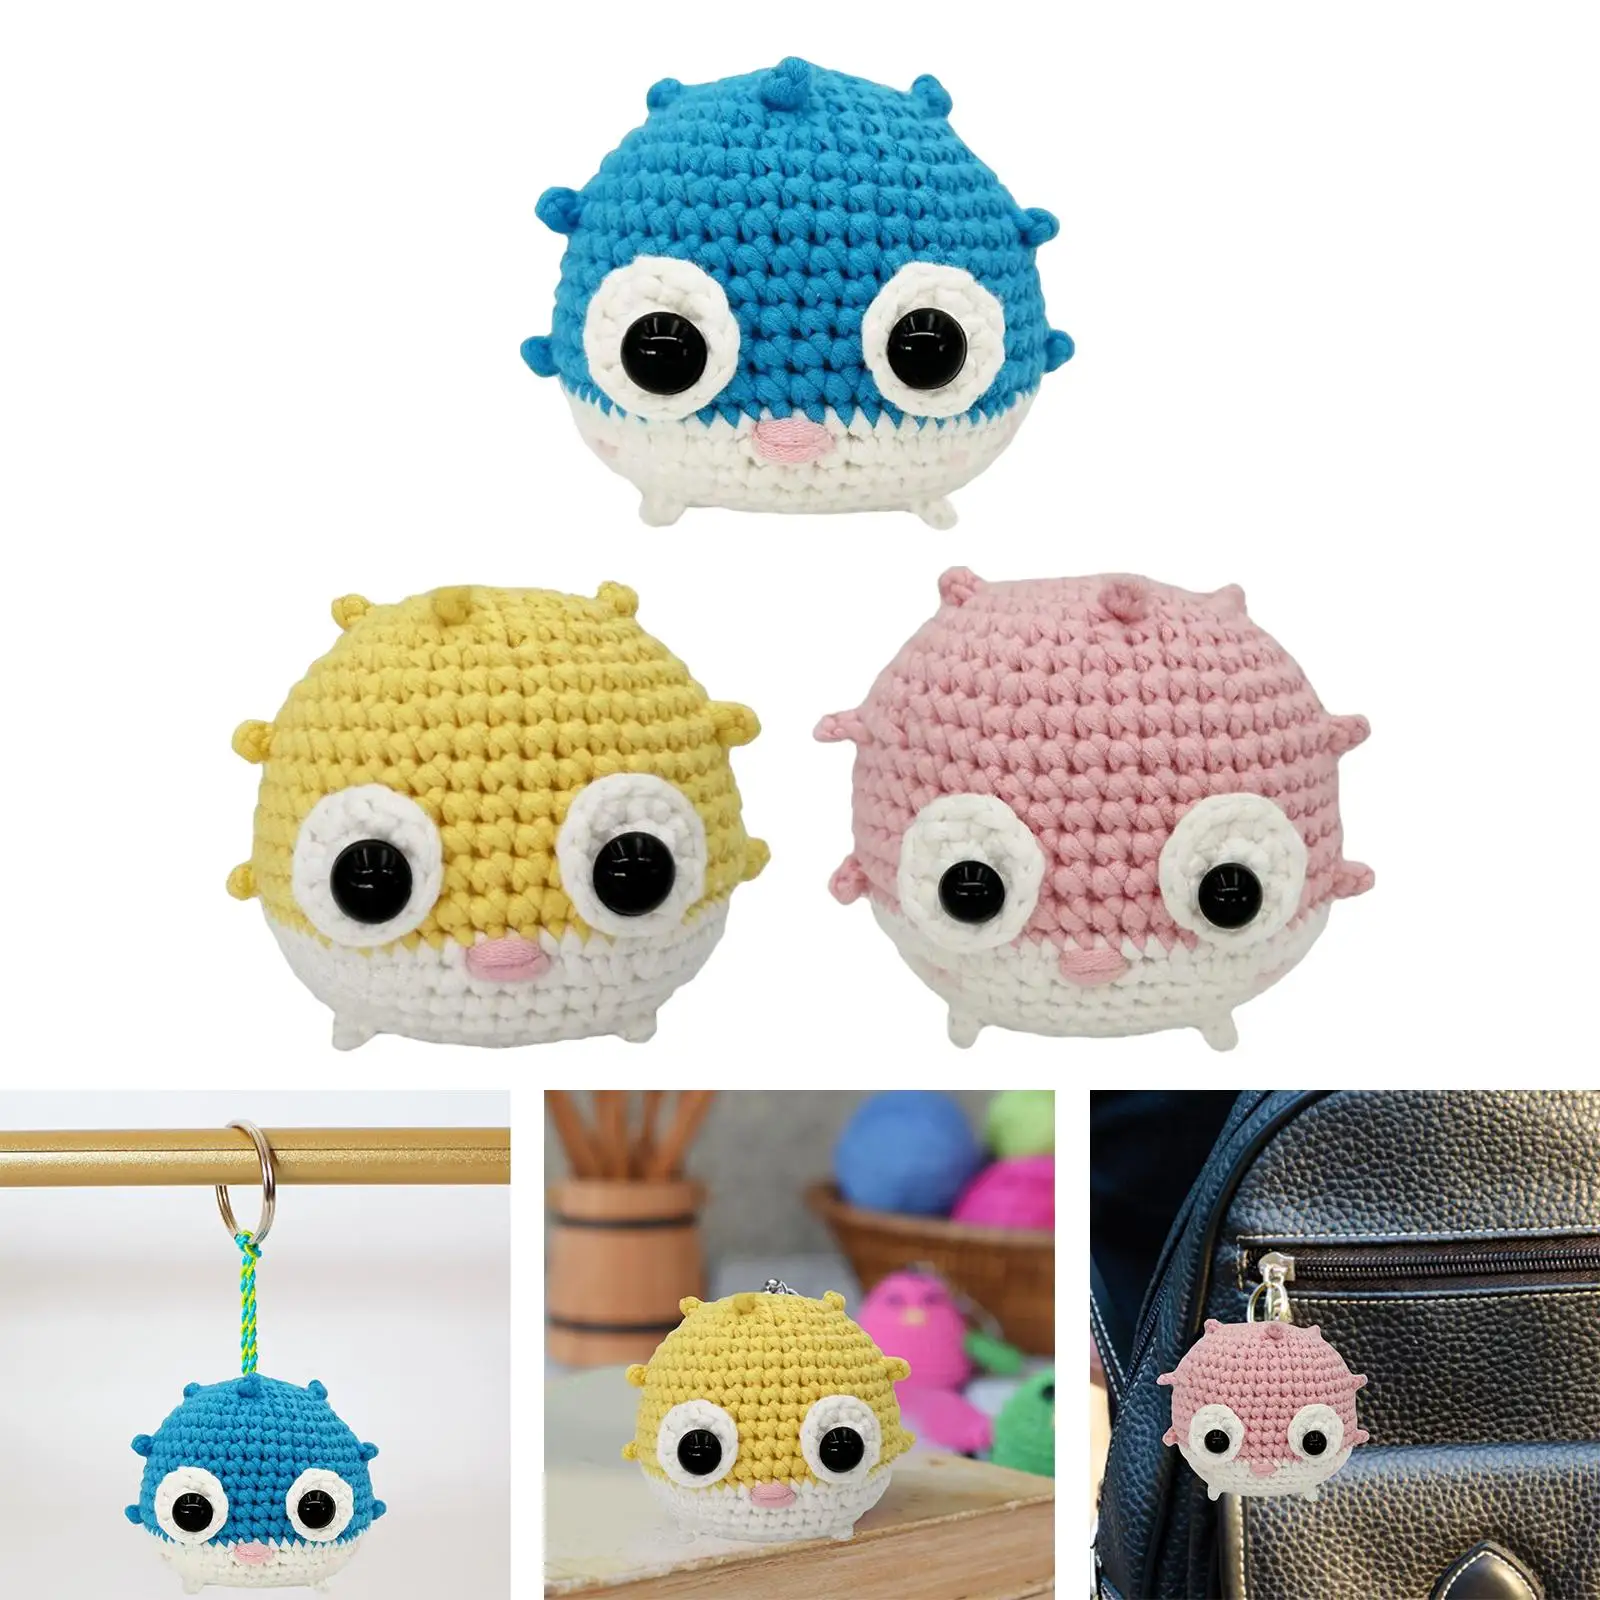 Animal Crochet Kit Make Your Own Starter Classic DIY Puffer Fish Doll Crochet Kit Beginner Crochet Kit for Birthday Gift Adults